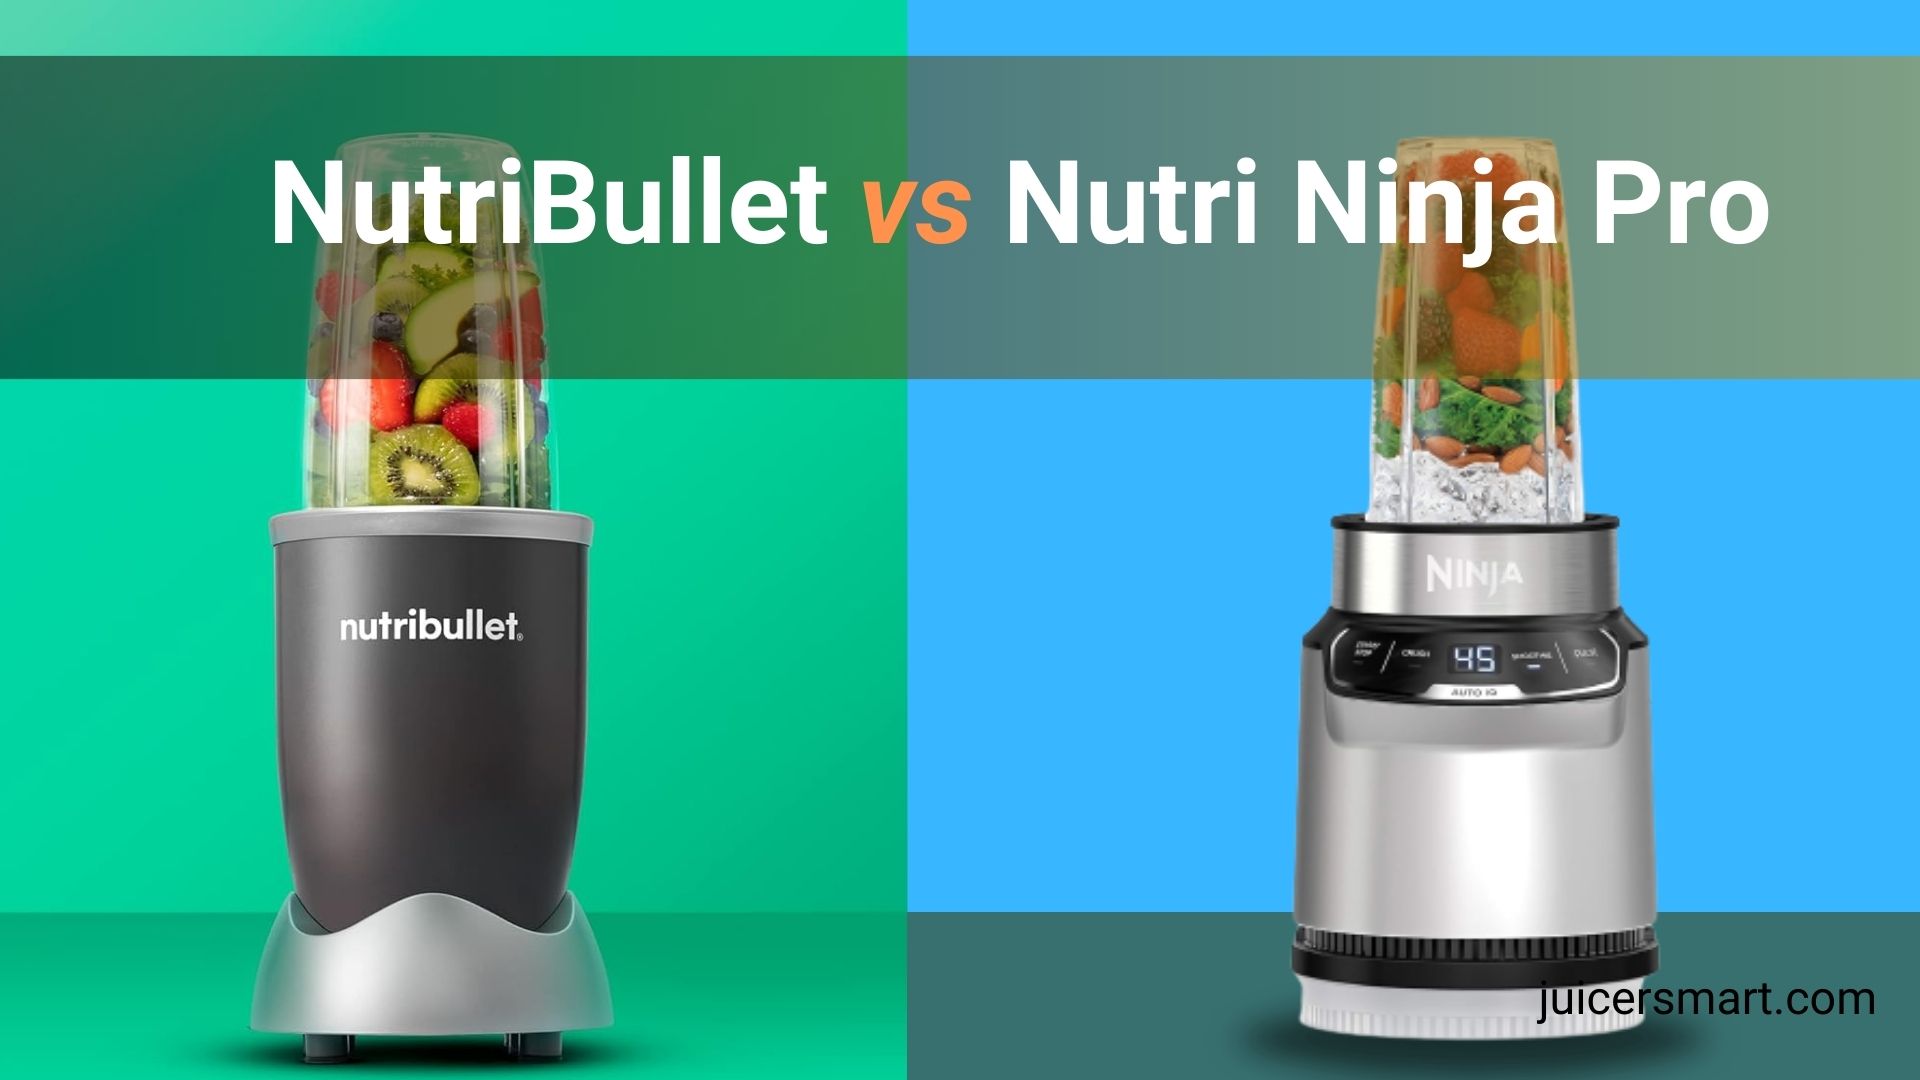 NutriBullet vs Nutri Ninja Pro